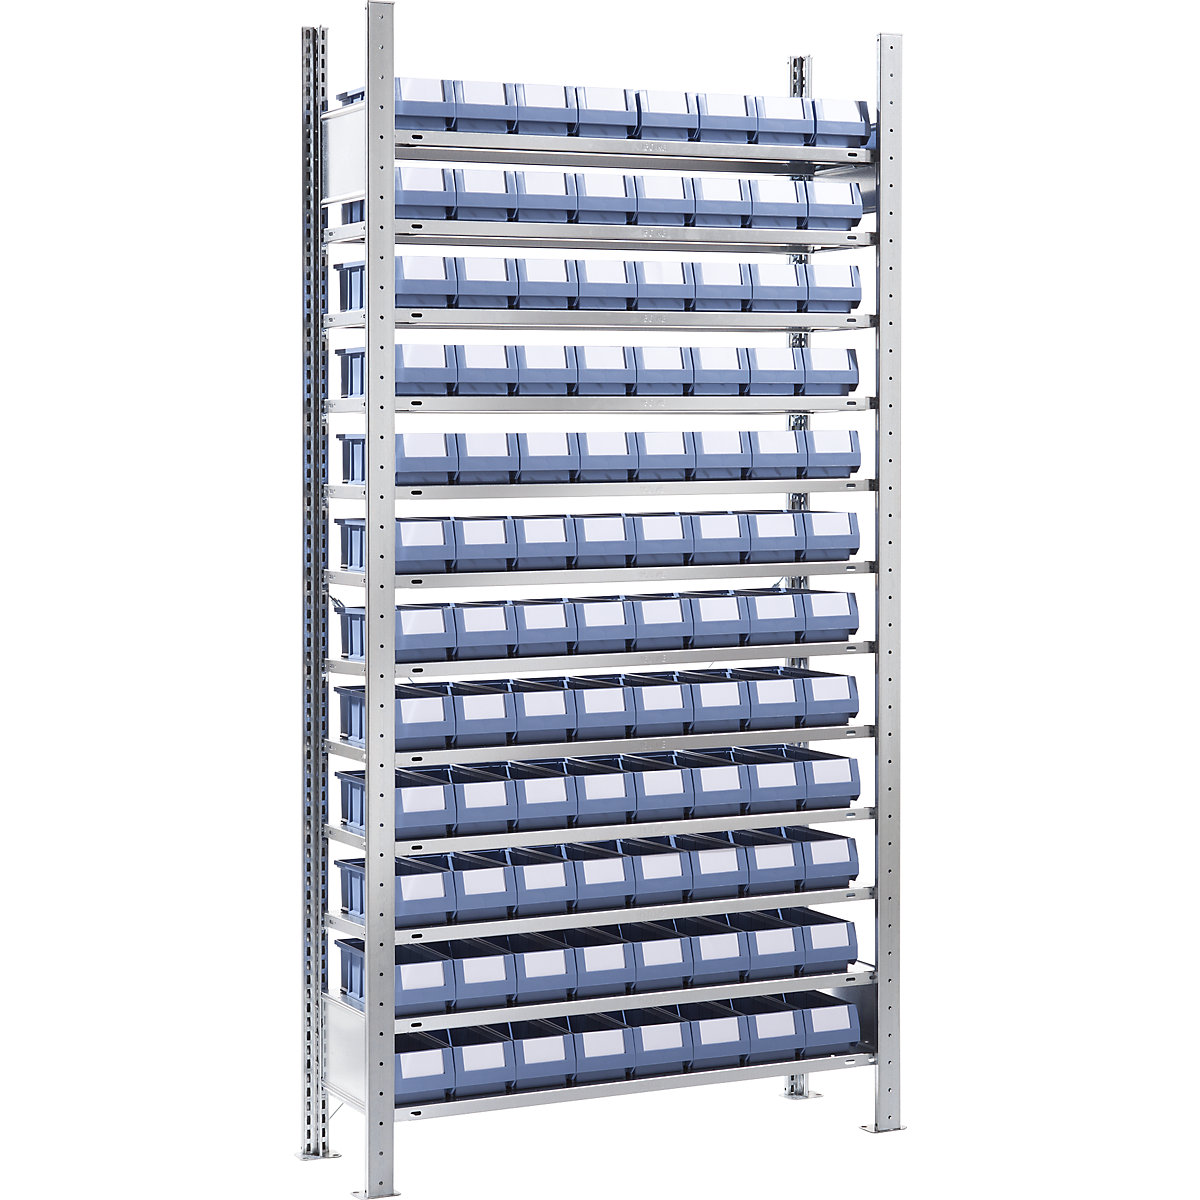 Estante de encaixar com caixas para estante – eurokraft pro, altura 2000 mm, 96 caixas, 12 prateleiras, profundidade 336 mm, estante adicional-6